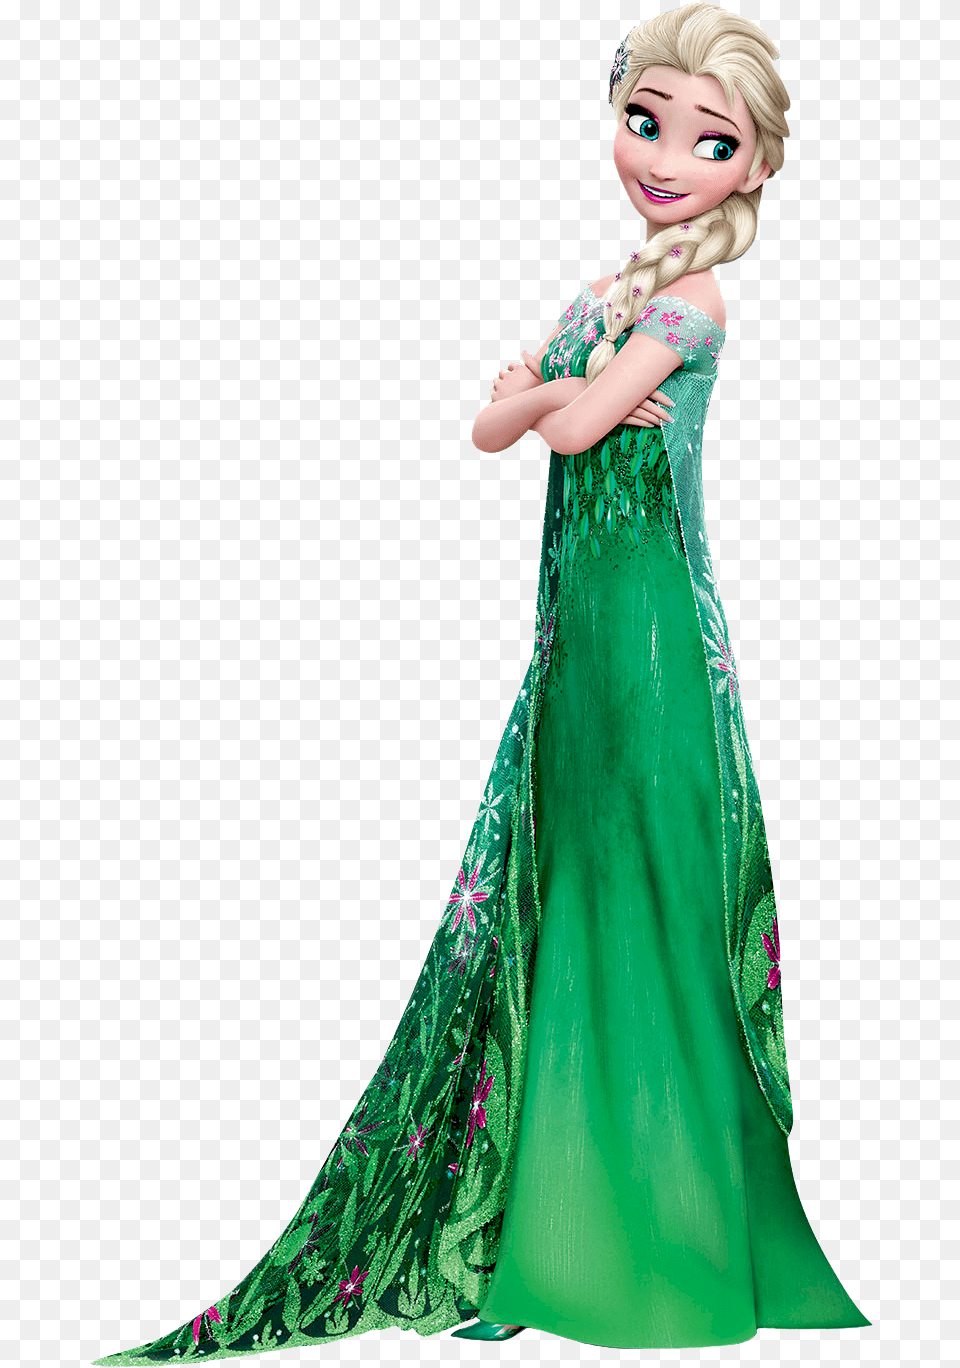 Queen Elsa Frozen Fever Elsa Anna Frozen Fever, Clothing, Dress, Formal Wear, Gown Png